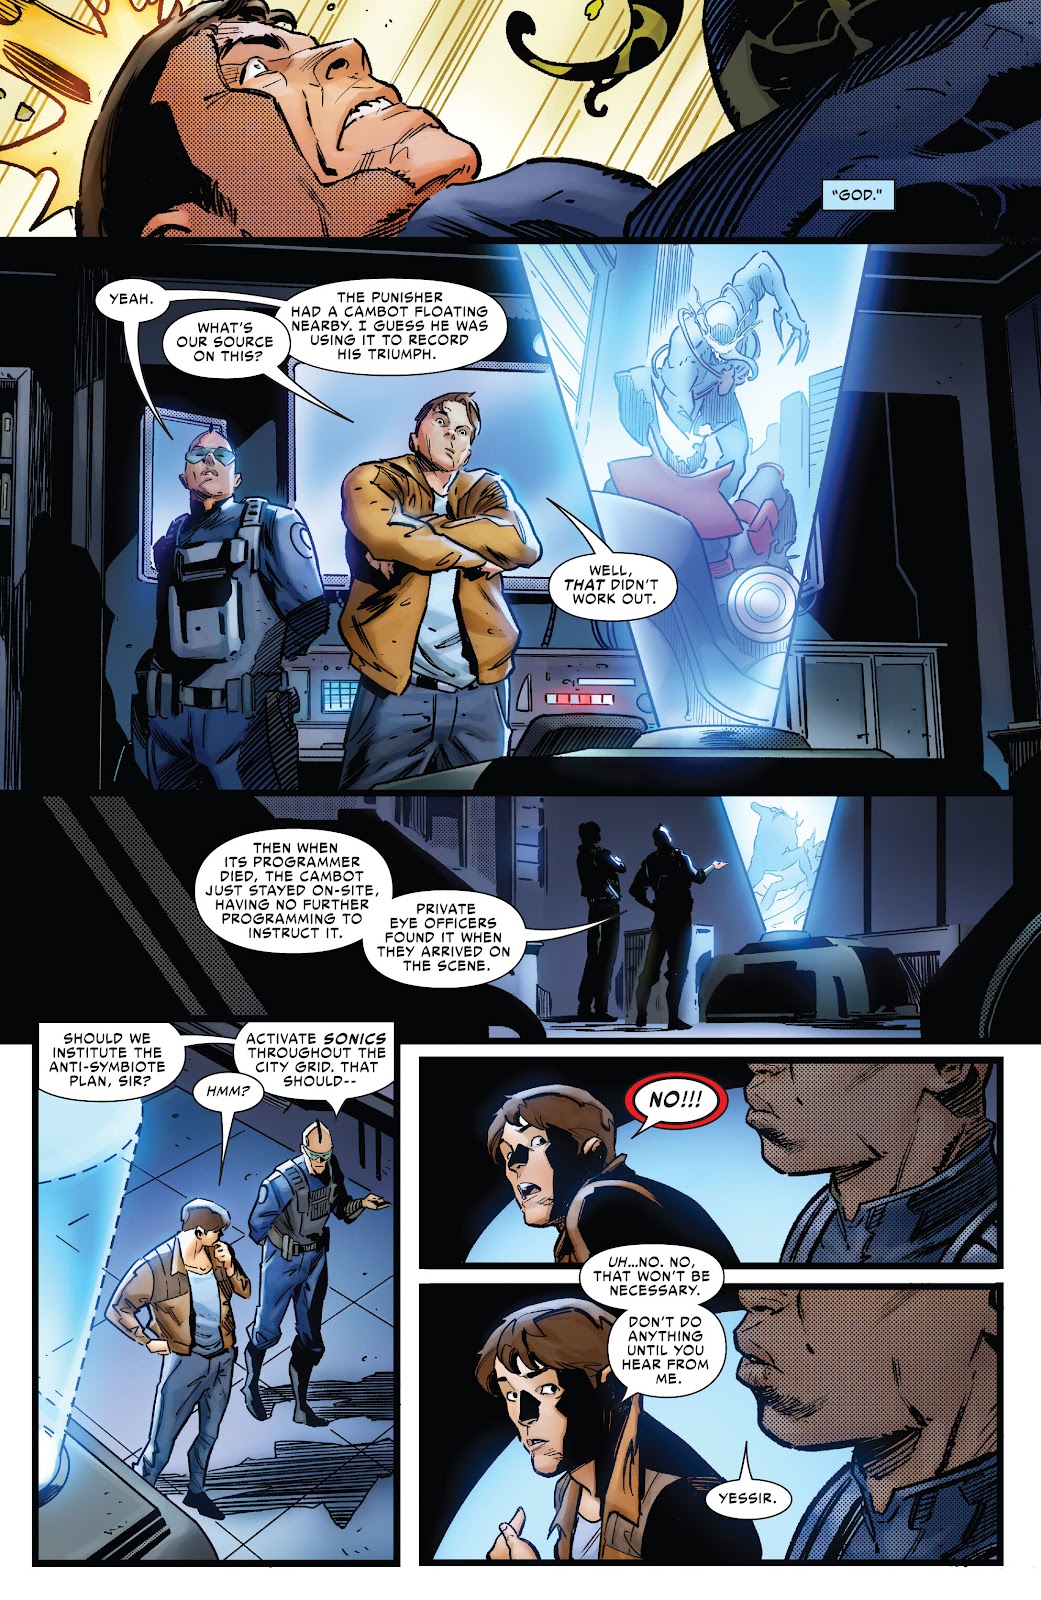 Symbiote Spider-Man 2099 issue 2 - Page 12